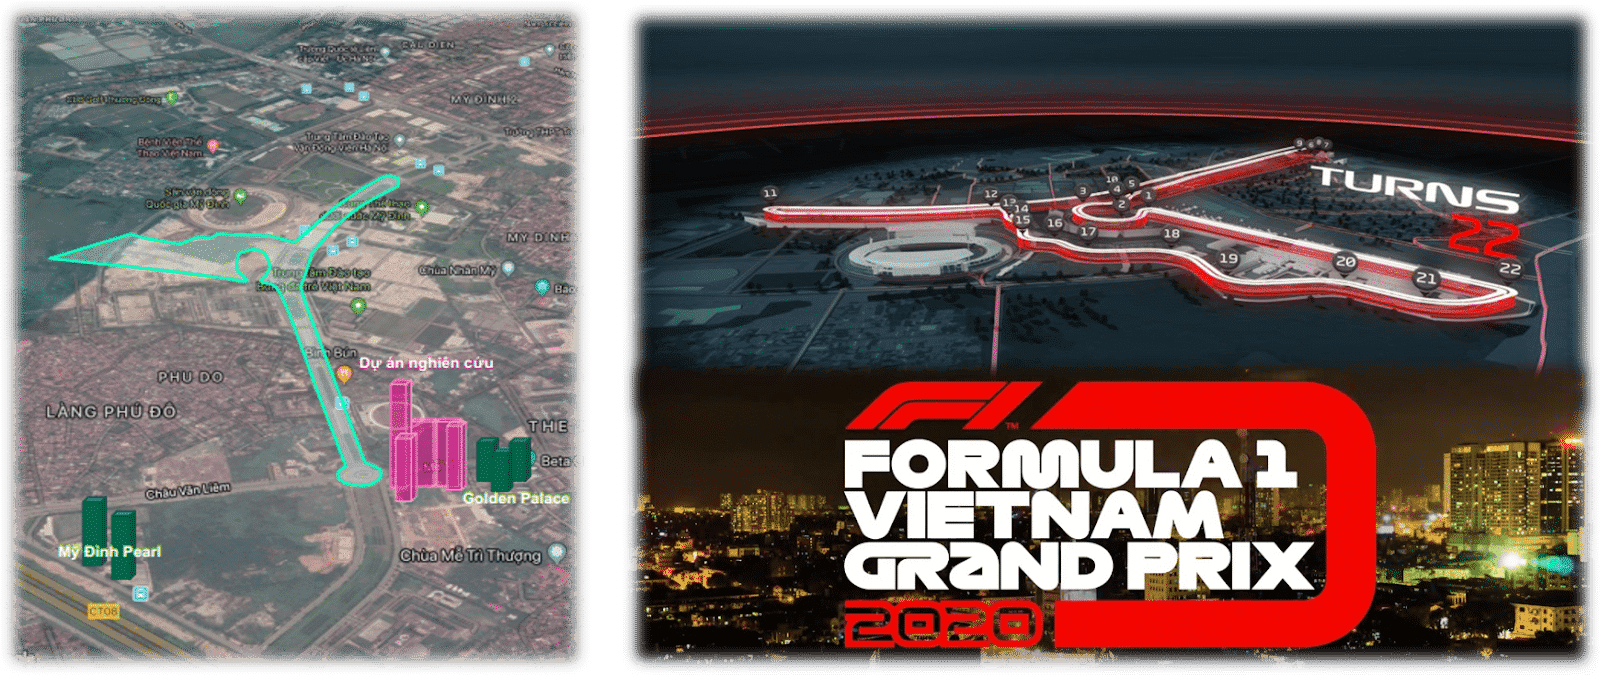 The Matrix One sở hữu vị trí giao lộ Vàng view trường đua F1 Mỹ Đình